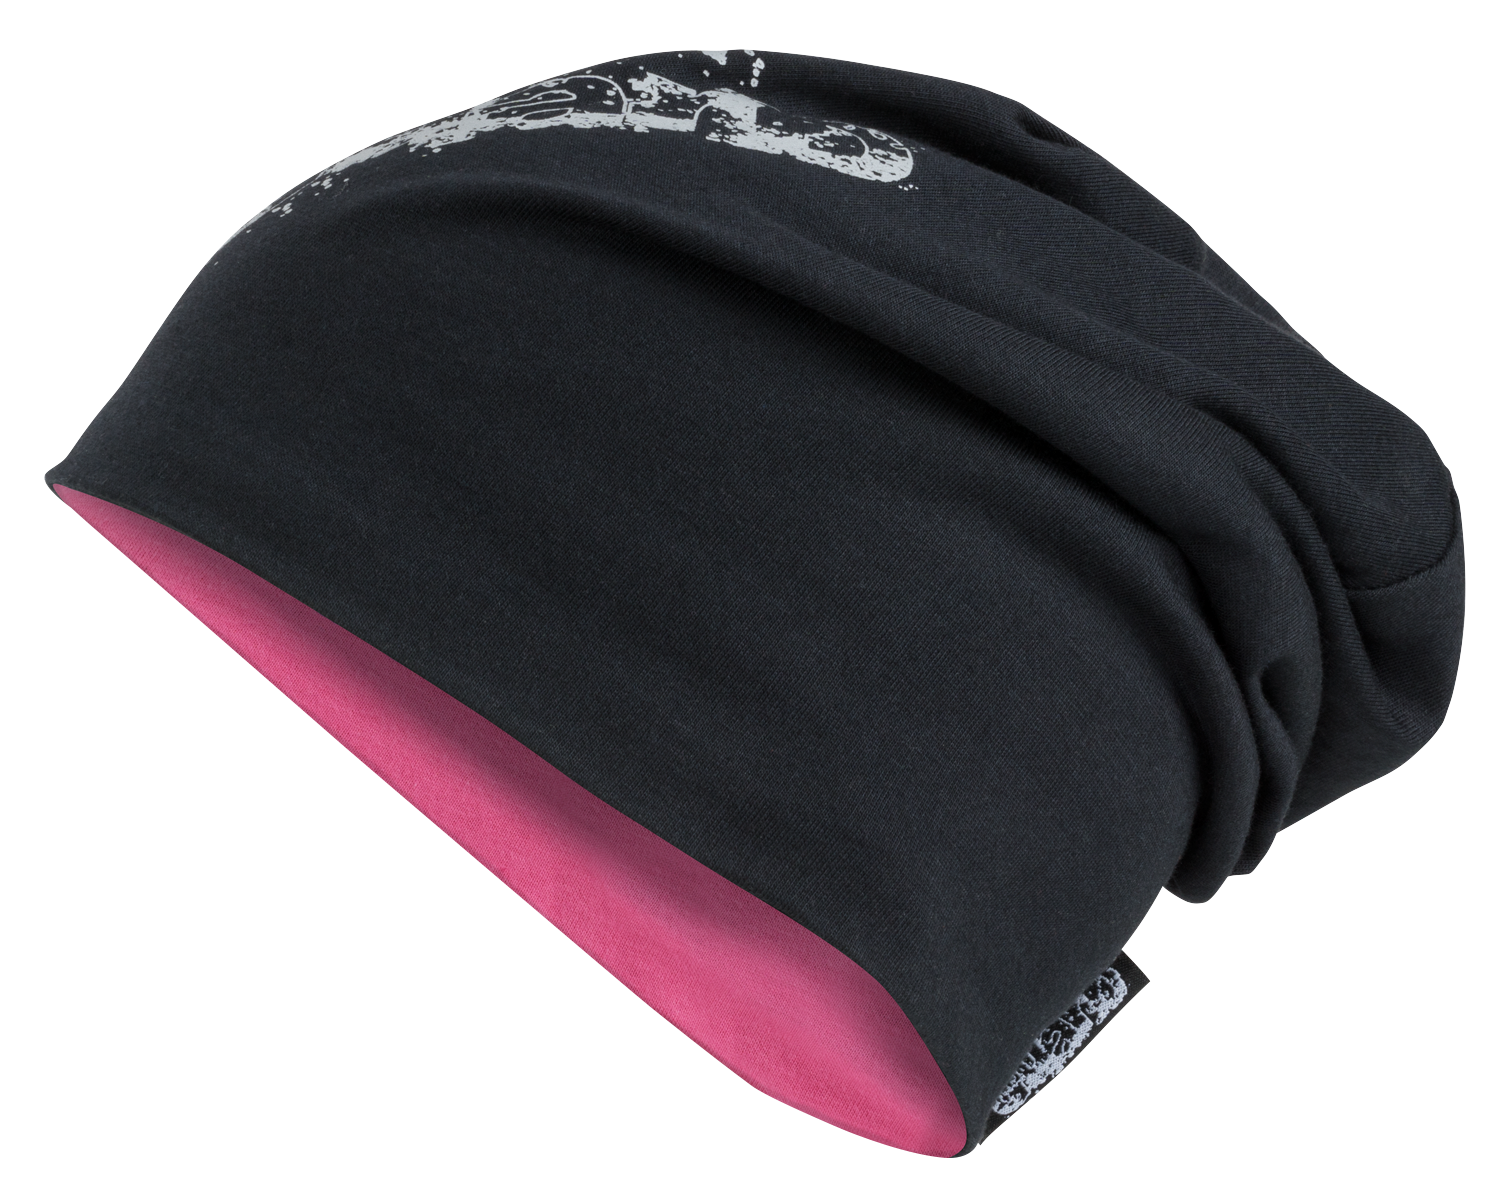 Safety Maker 44560 Omkeerbare beanie pet reflecterend, voor joggen, hardlopen, sport, running cap, sportpet heren/vrouwen met reflector roze-zwart